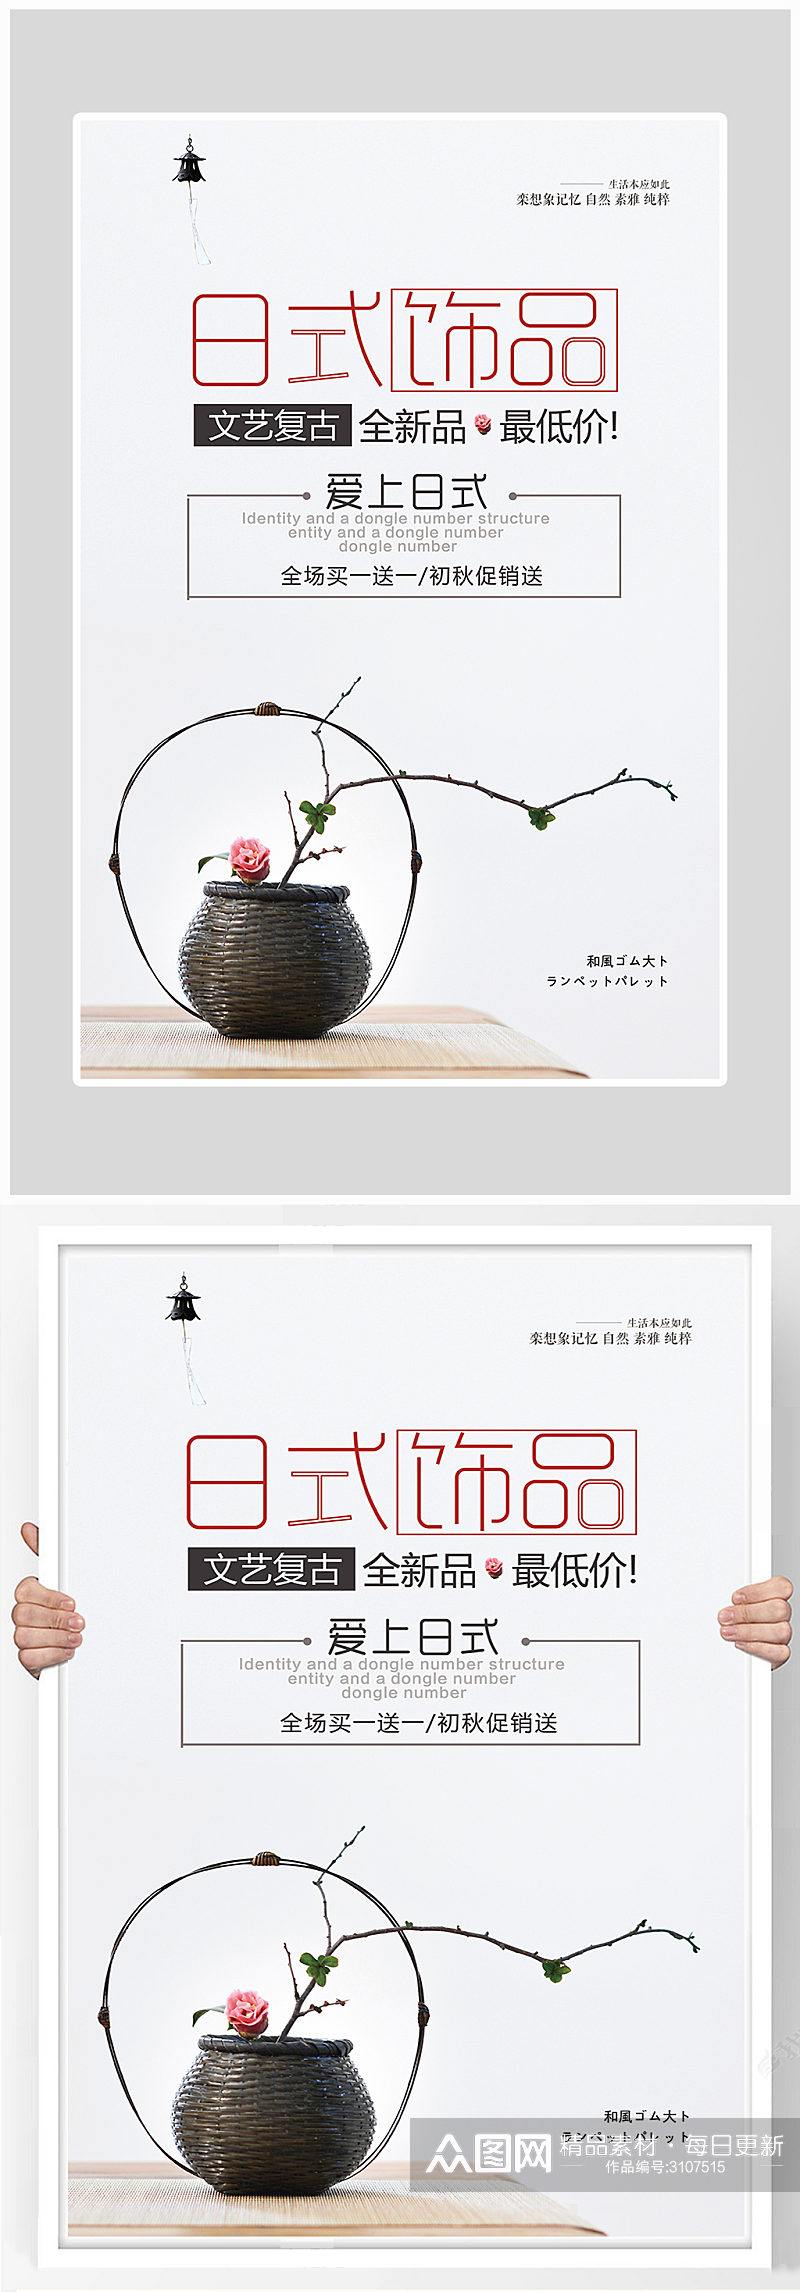 创意唯美日式饰品装饰海报设计素材